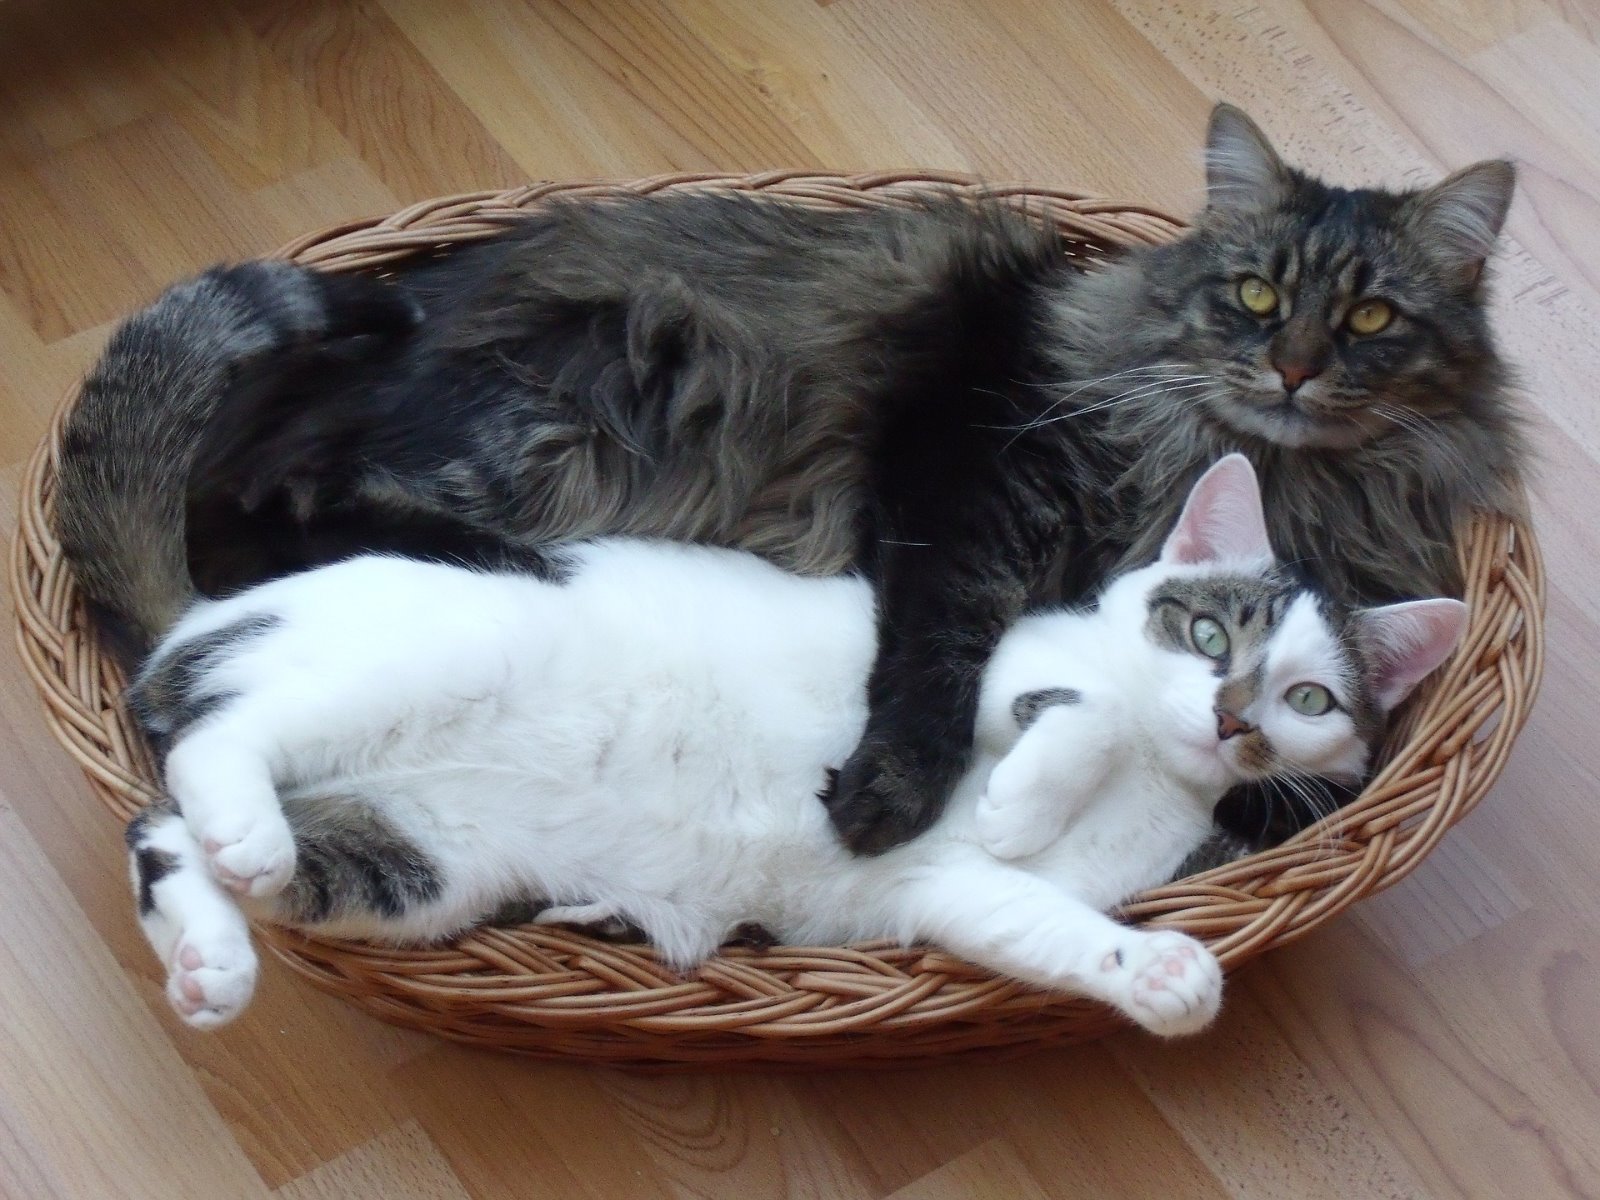 Eine Maine Coon und eine andere Katze liegen gemeinsam im Korb